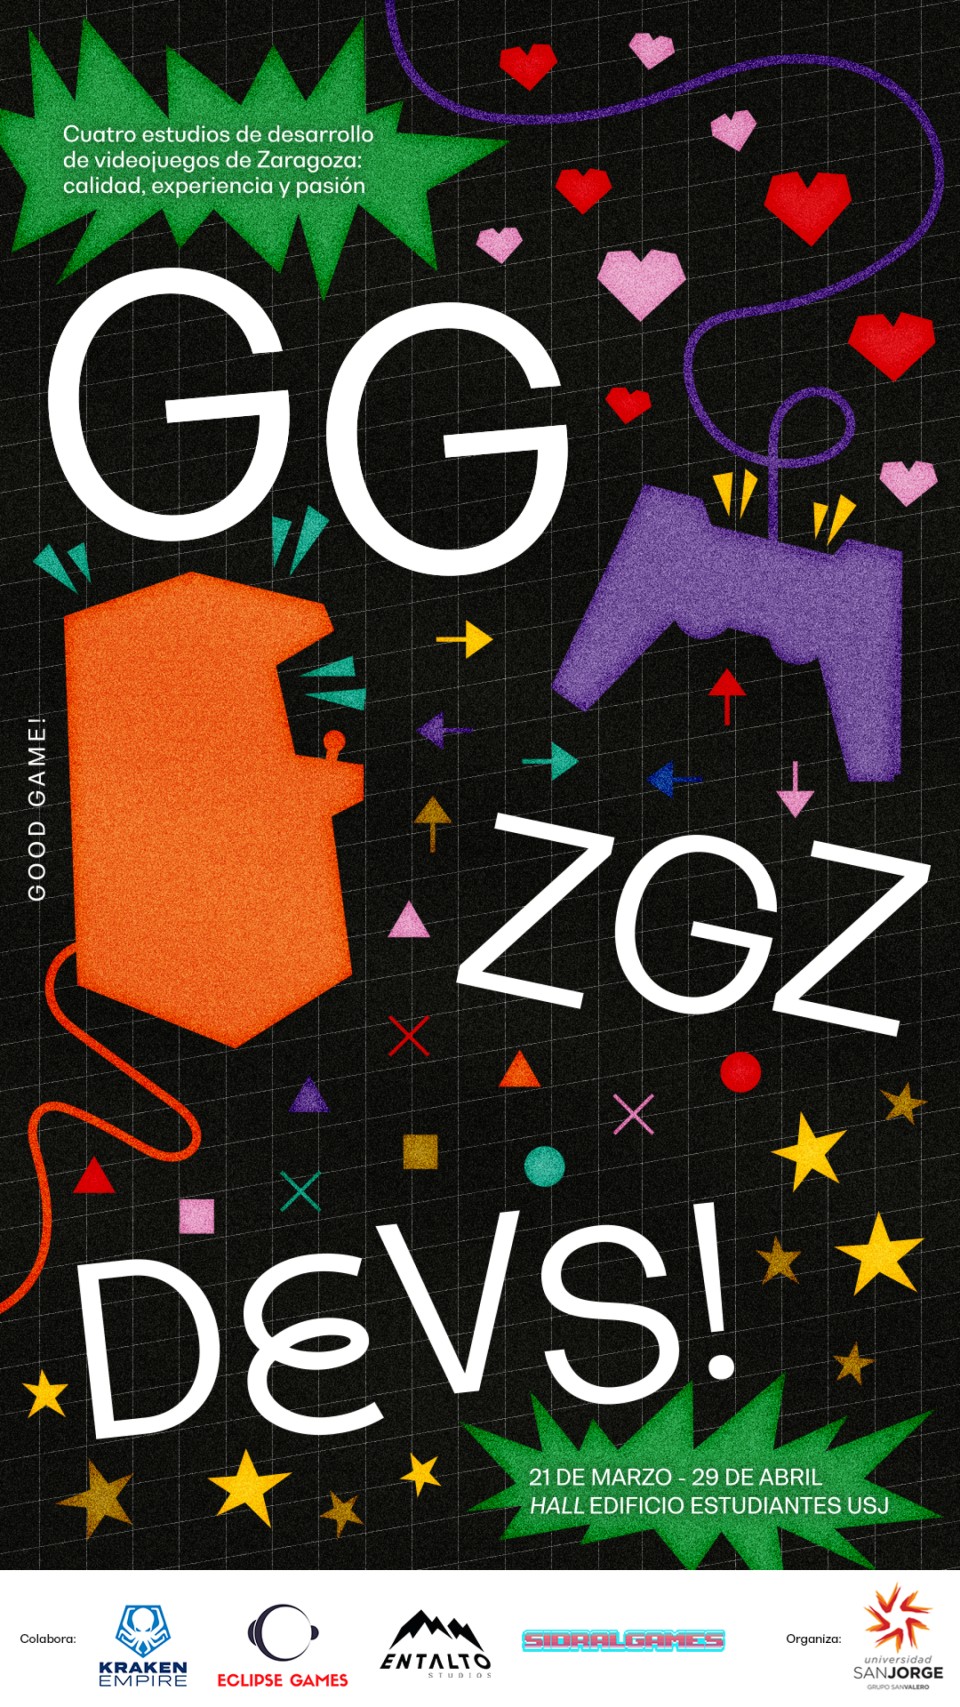 Imagen Cartel de "GG ZGZ DEVS!"